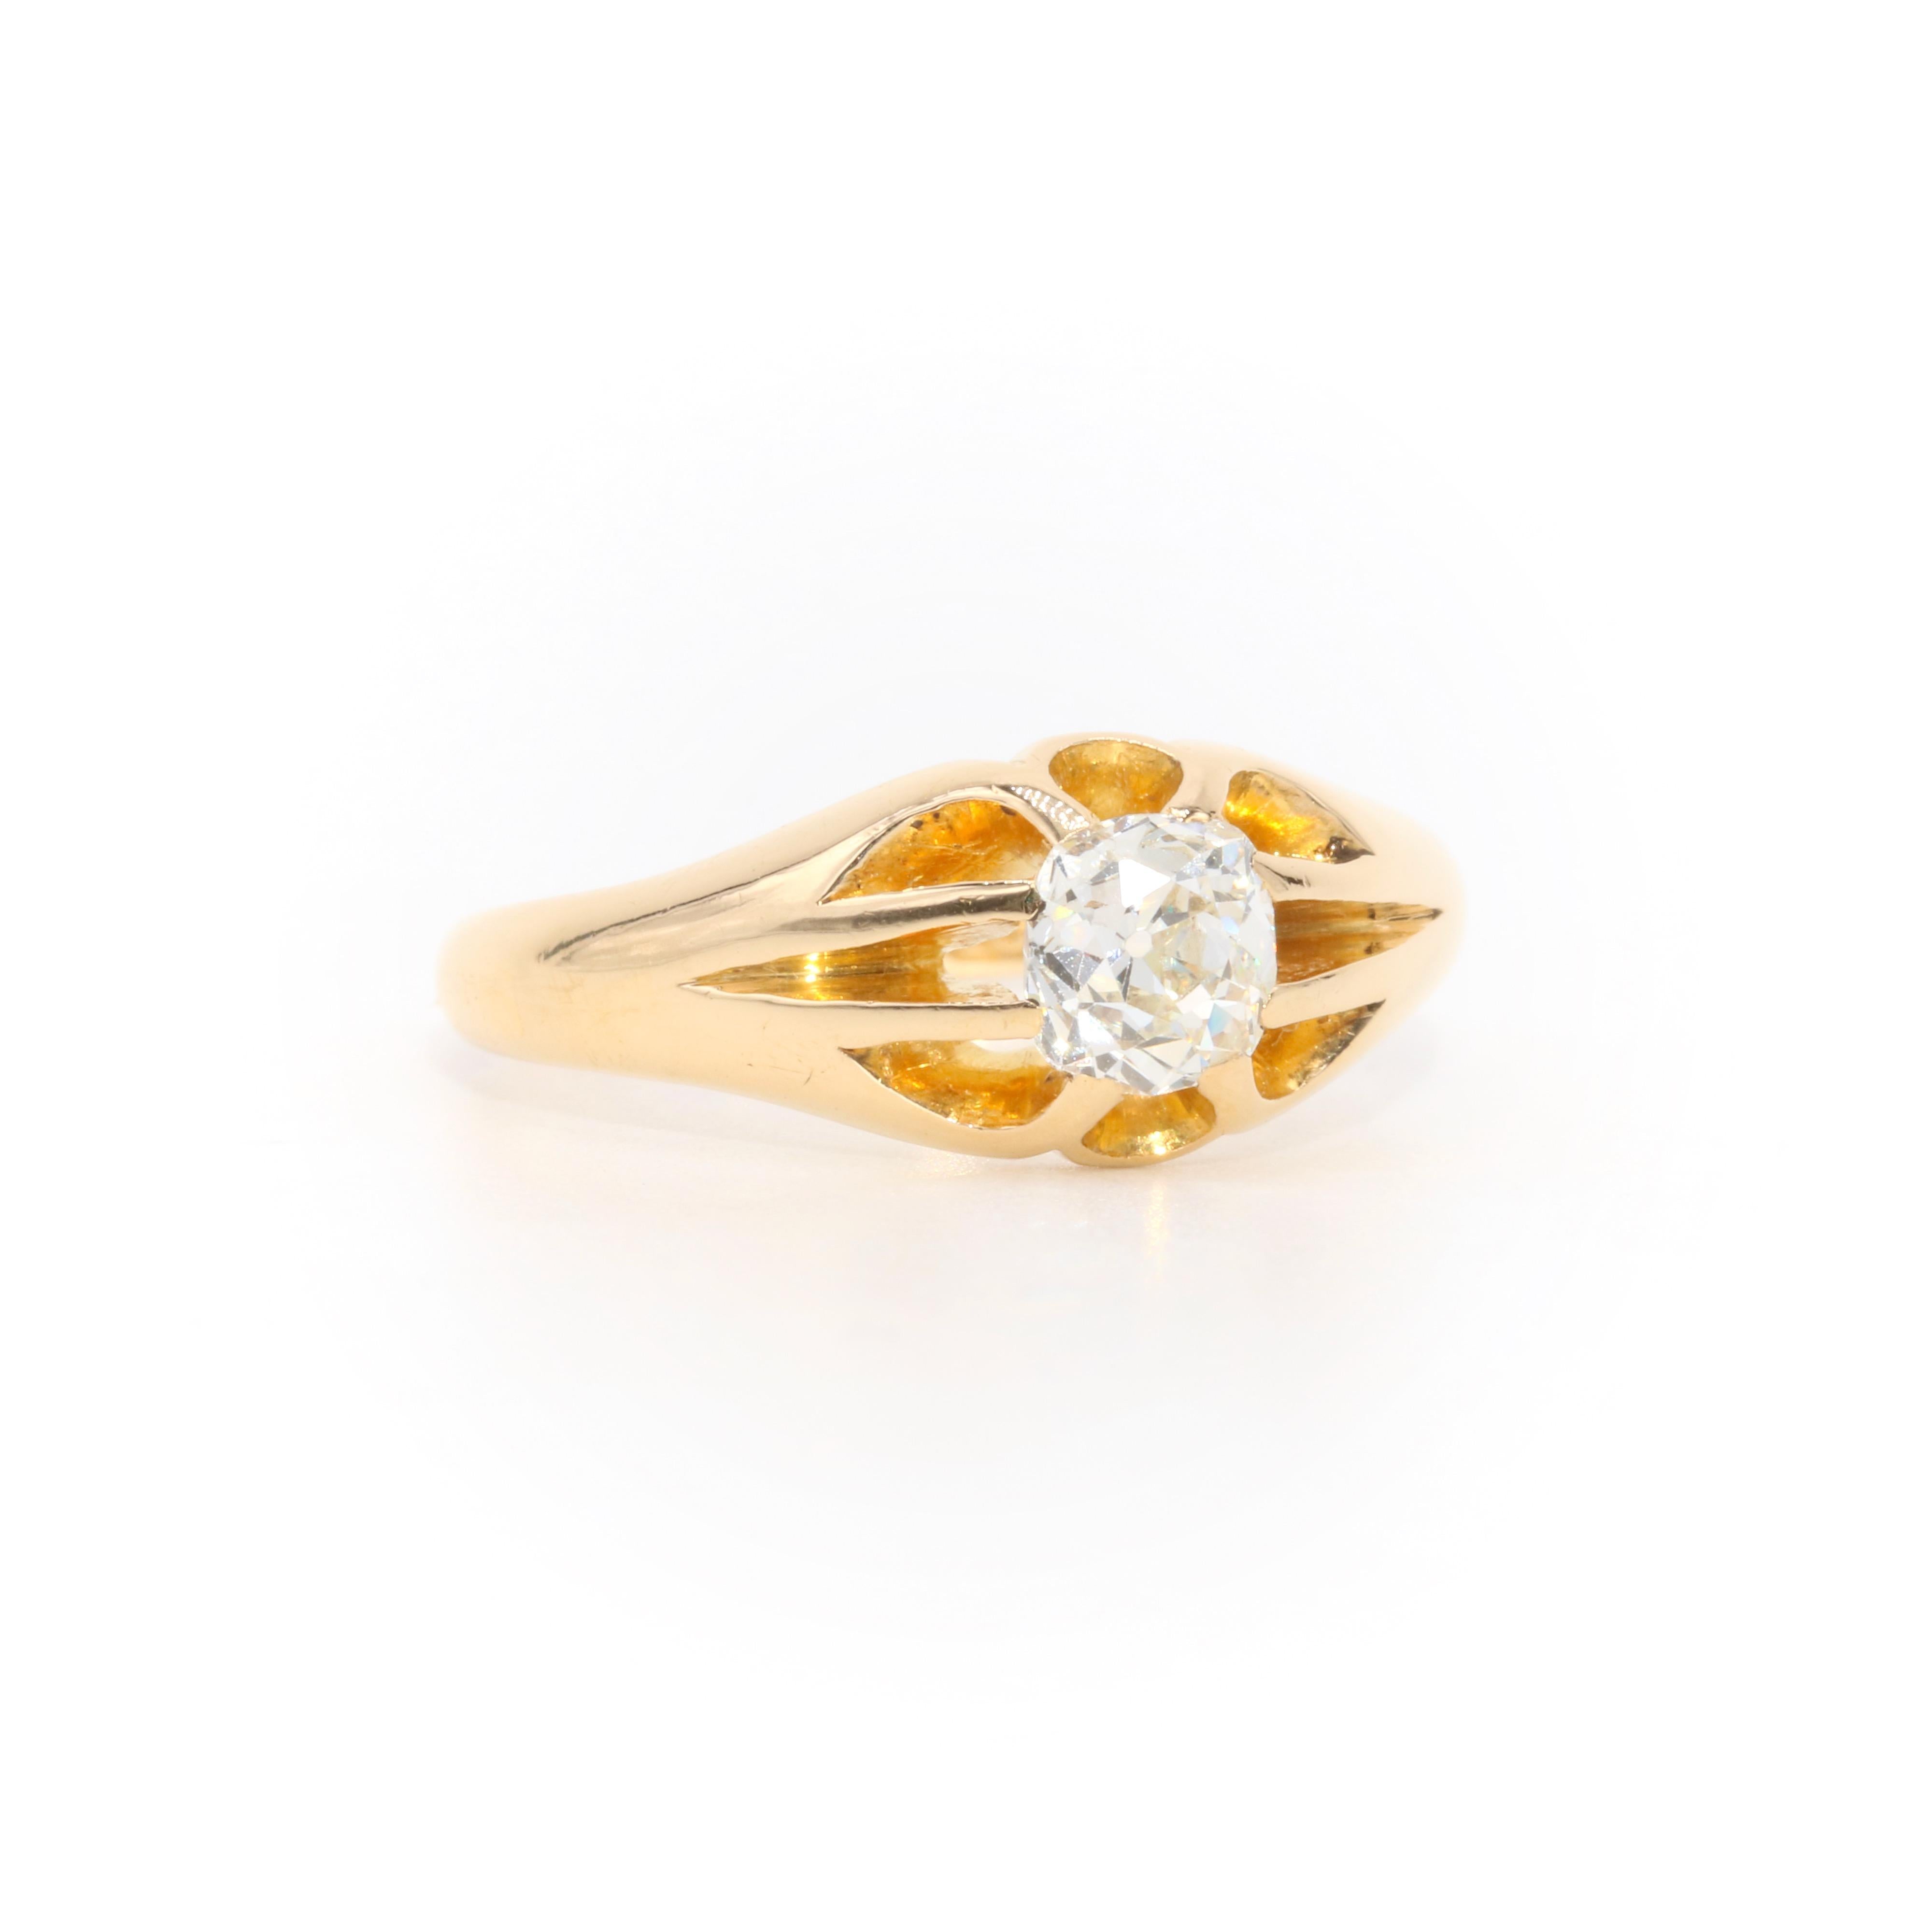 Ein antiker Diamant- und Gelbgoldring, bestehend aus einem großen Diamanten mit altem Minenschliff, gefasst in 18 Karat Gelbgold, an einem Band aus 18 Karat Gelbgold. 

Dieser auffällige Ring ist in der Mitte mit einem großen Diamanten im